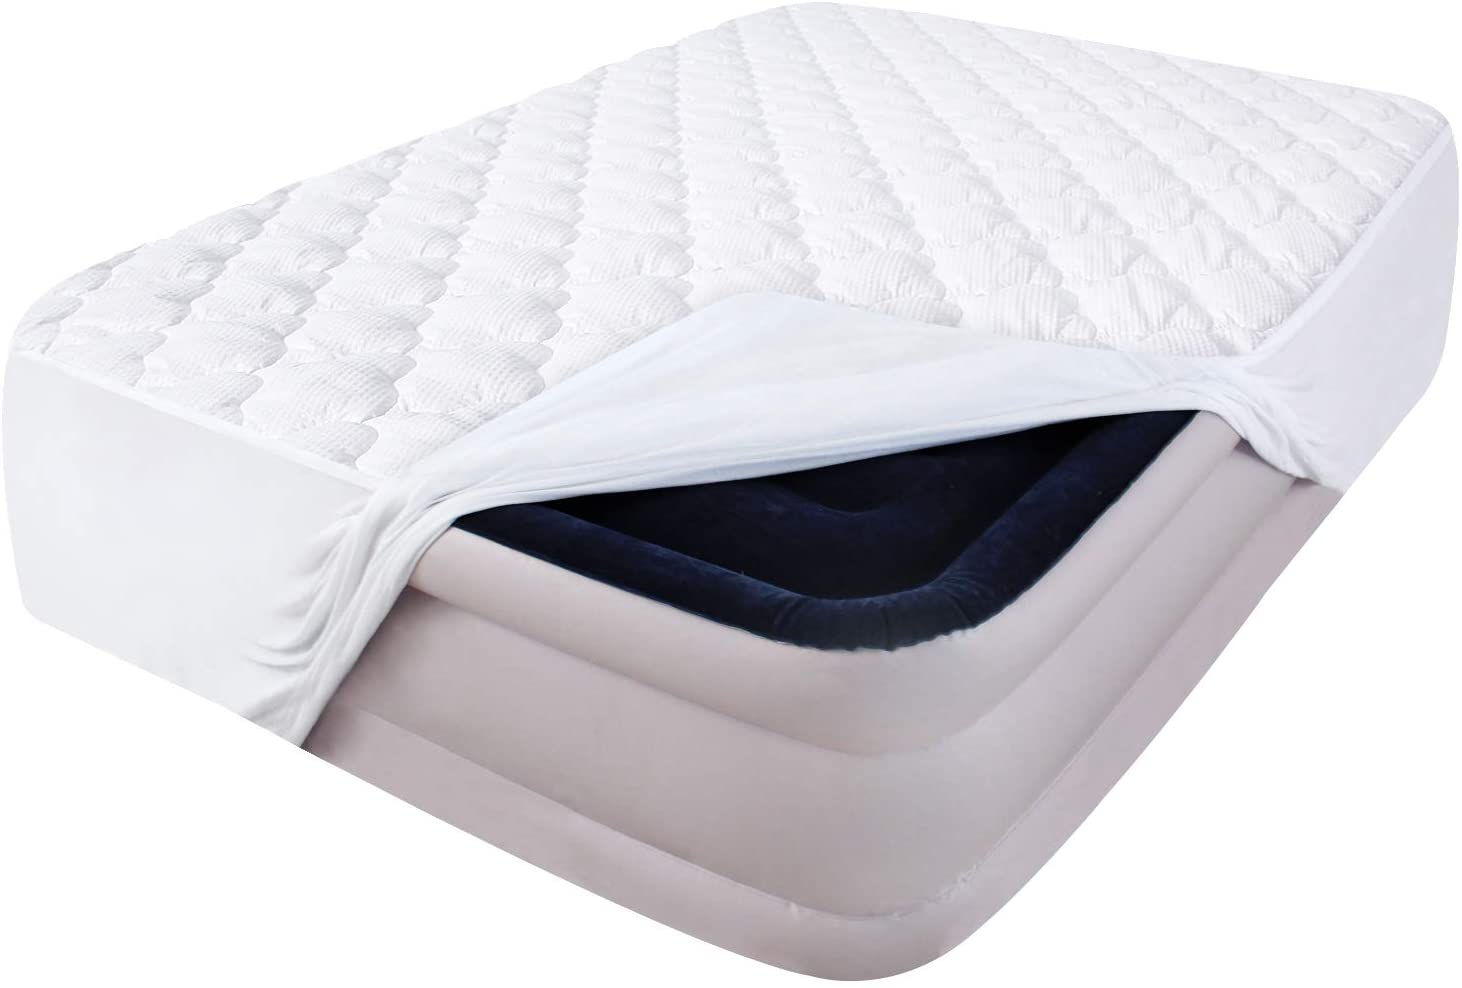 flex top mattress sheets